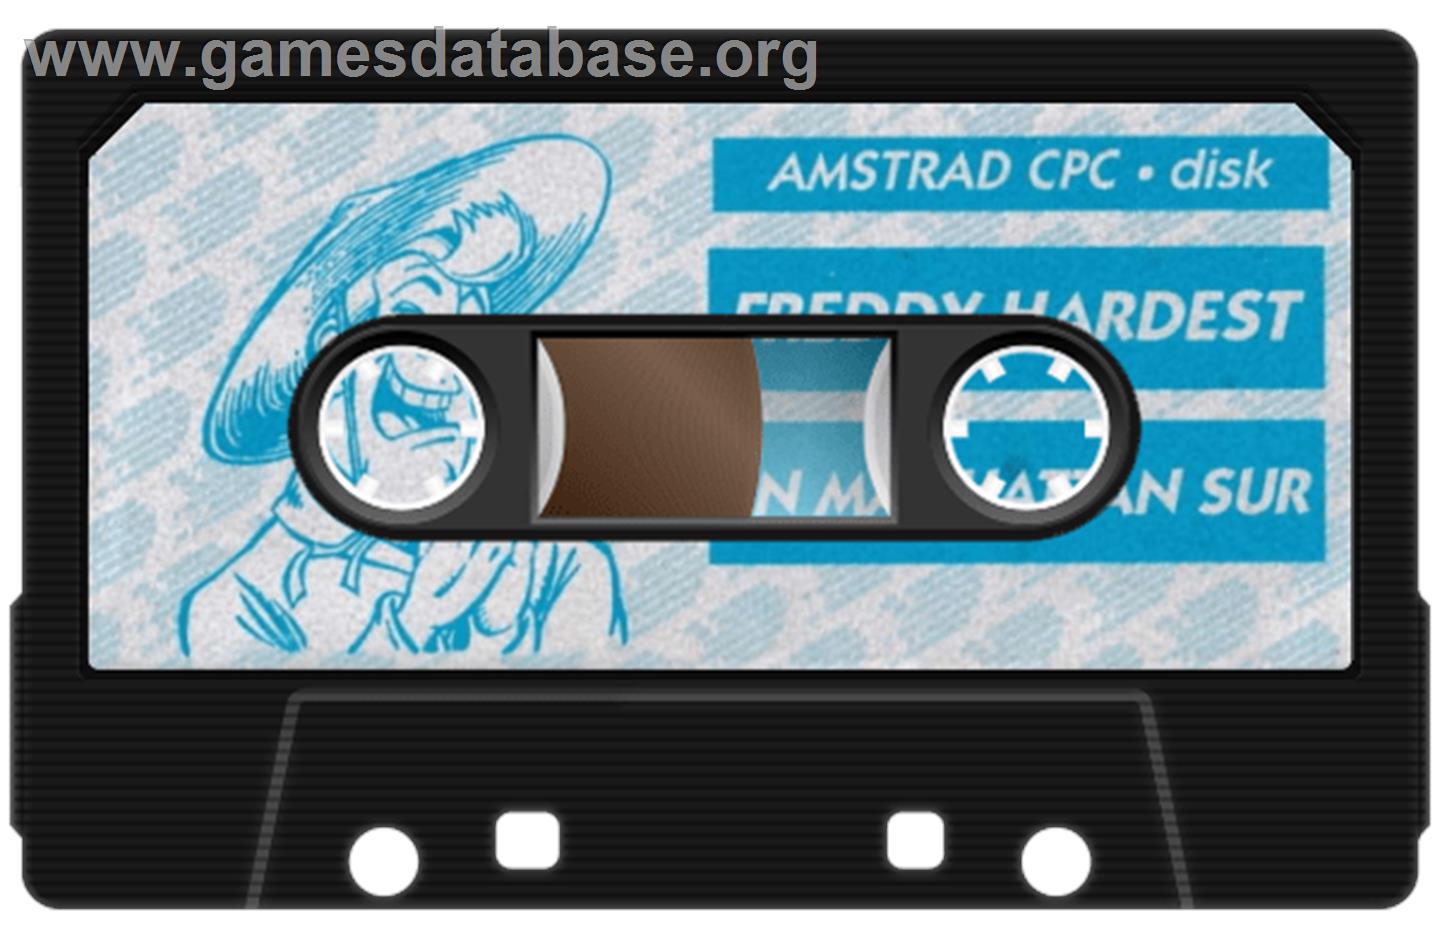 Freddy Hardest in South Manhattan - Amstrad CPC - Artwork - Cartridge